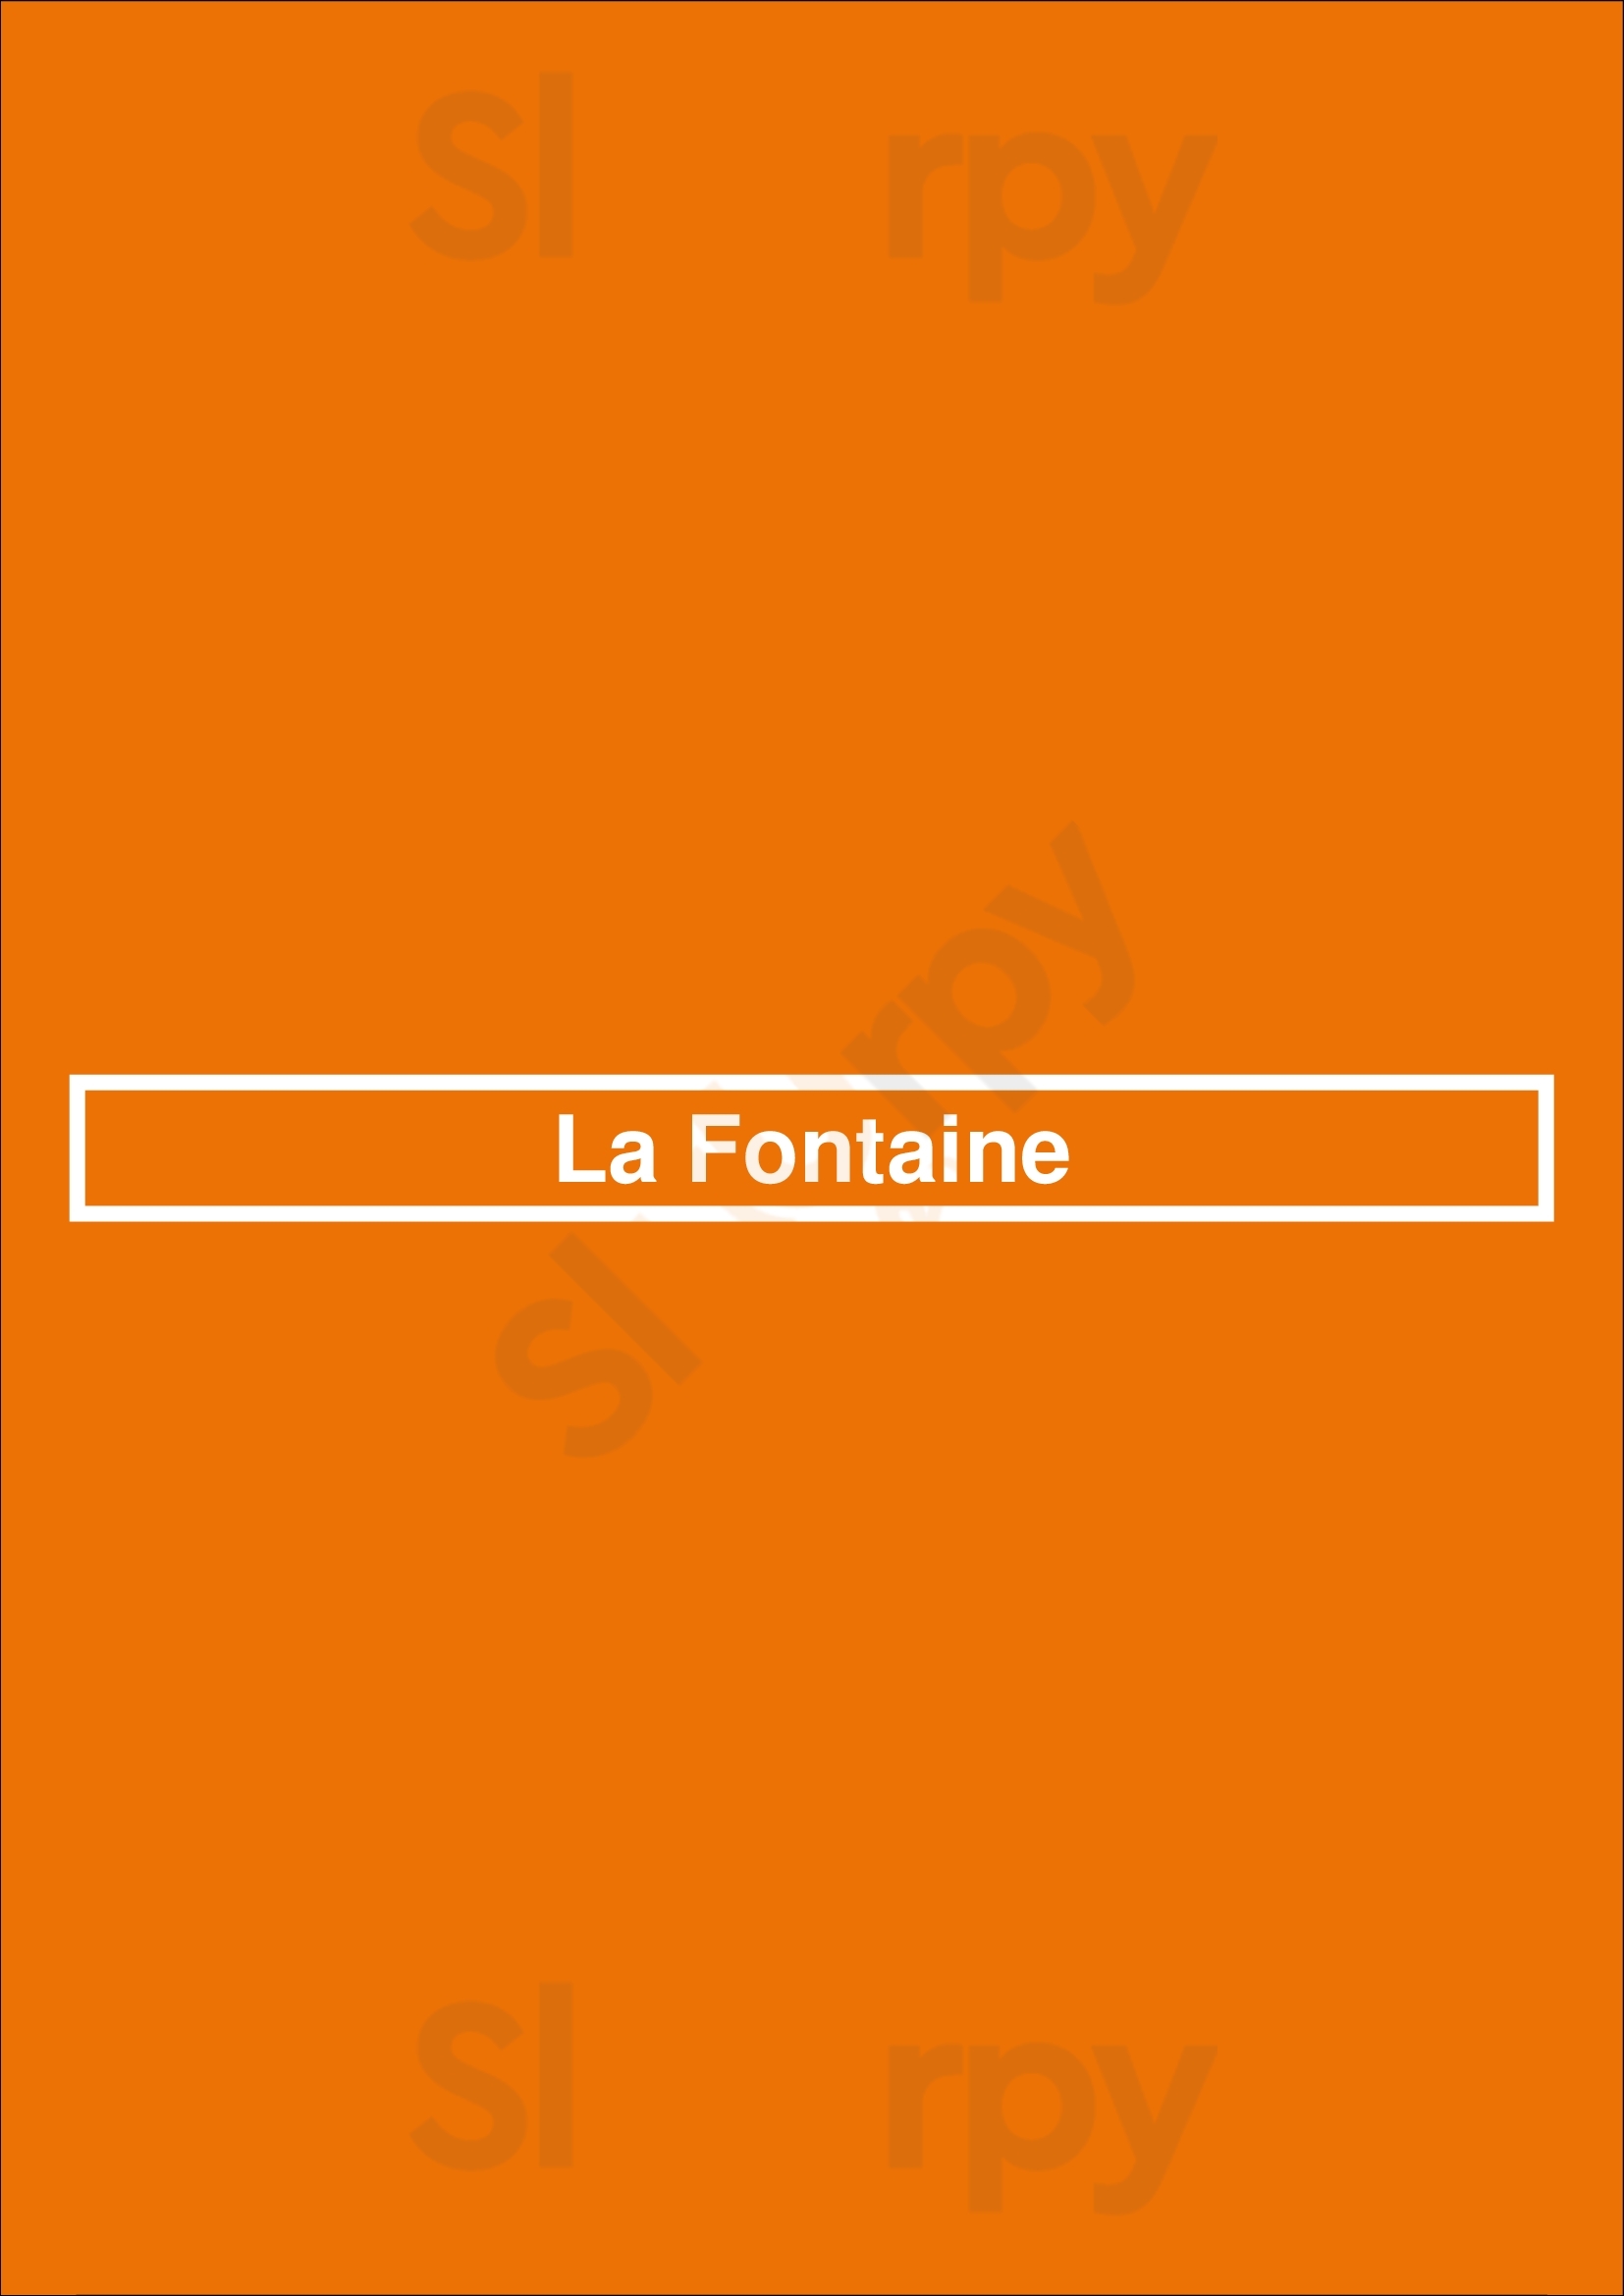 La Fontaine Mons Menu - 1